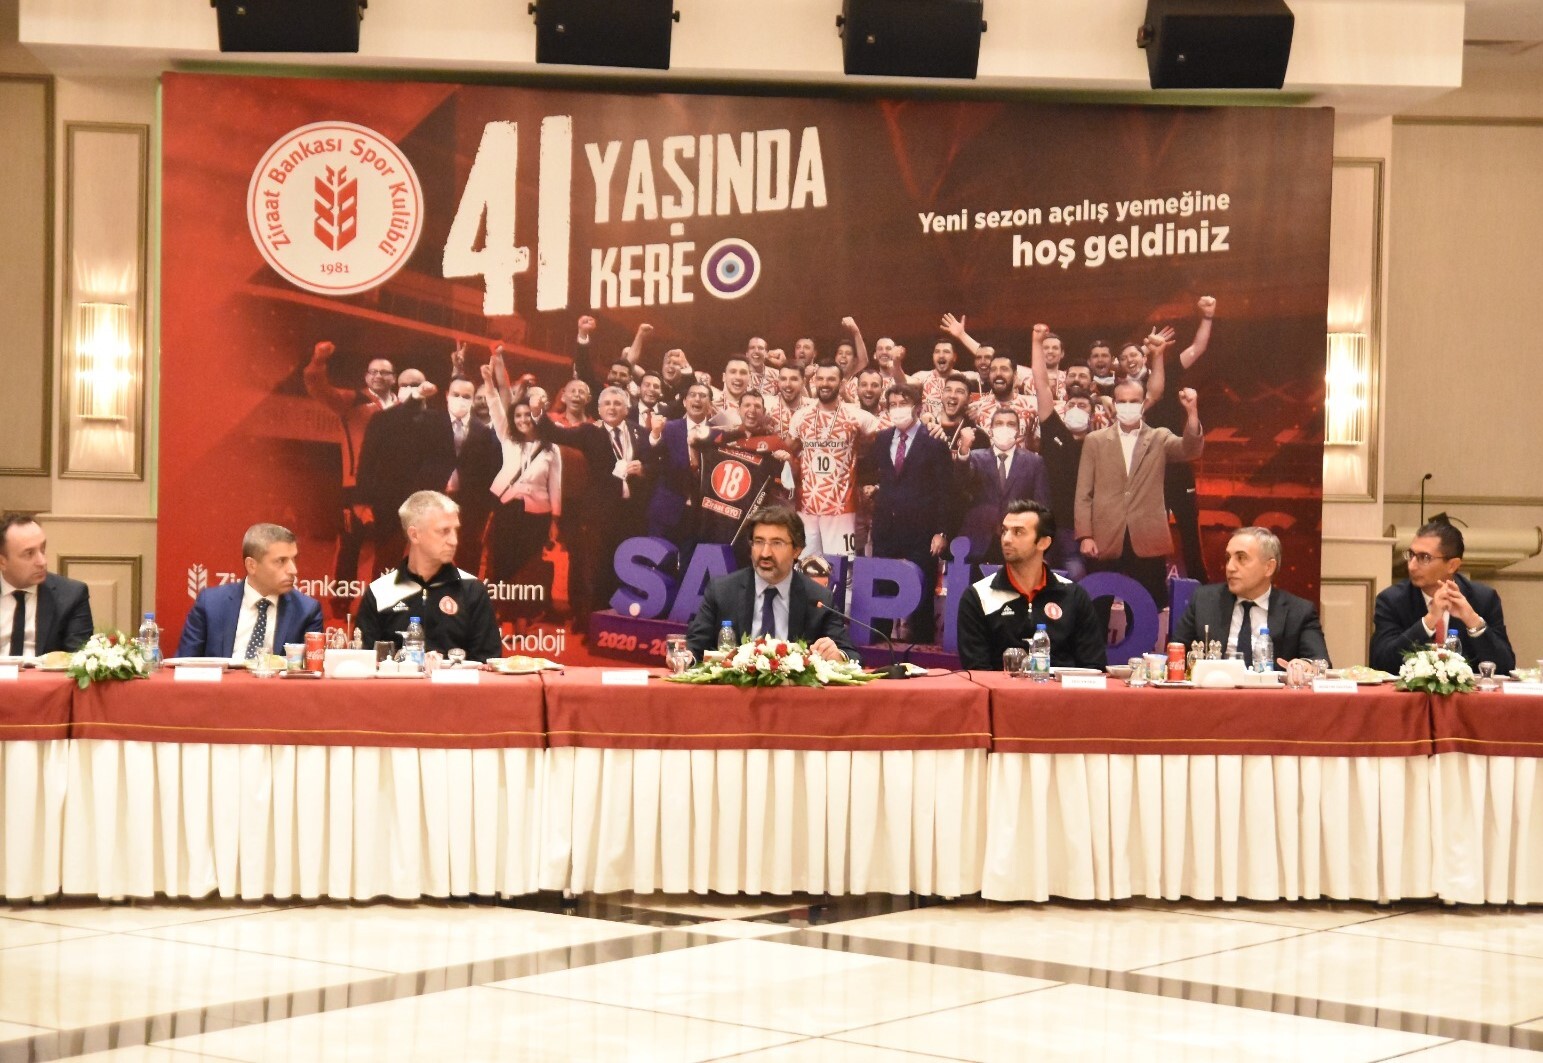 Ziraat Bankası Spor Kulübü Yeni Sezon Açılış Yemeği Ankara'da yapıldı